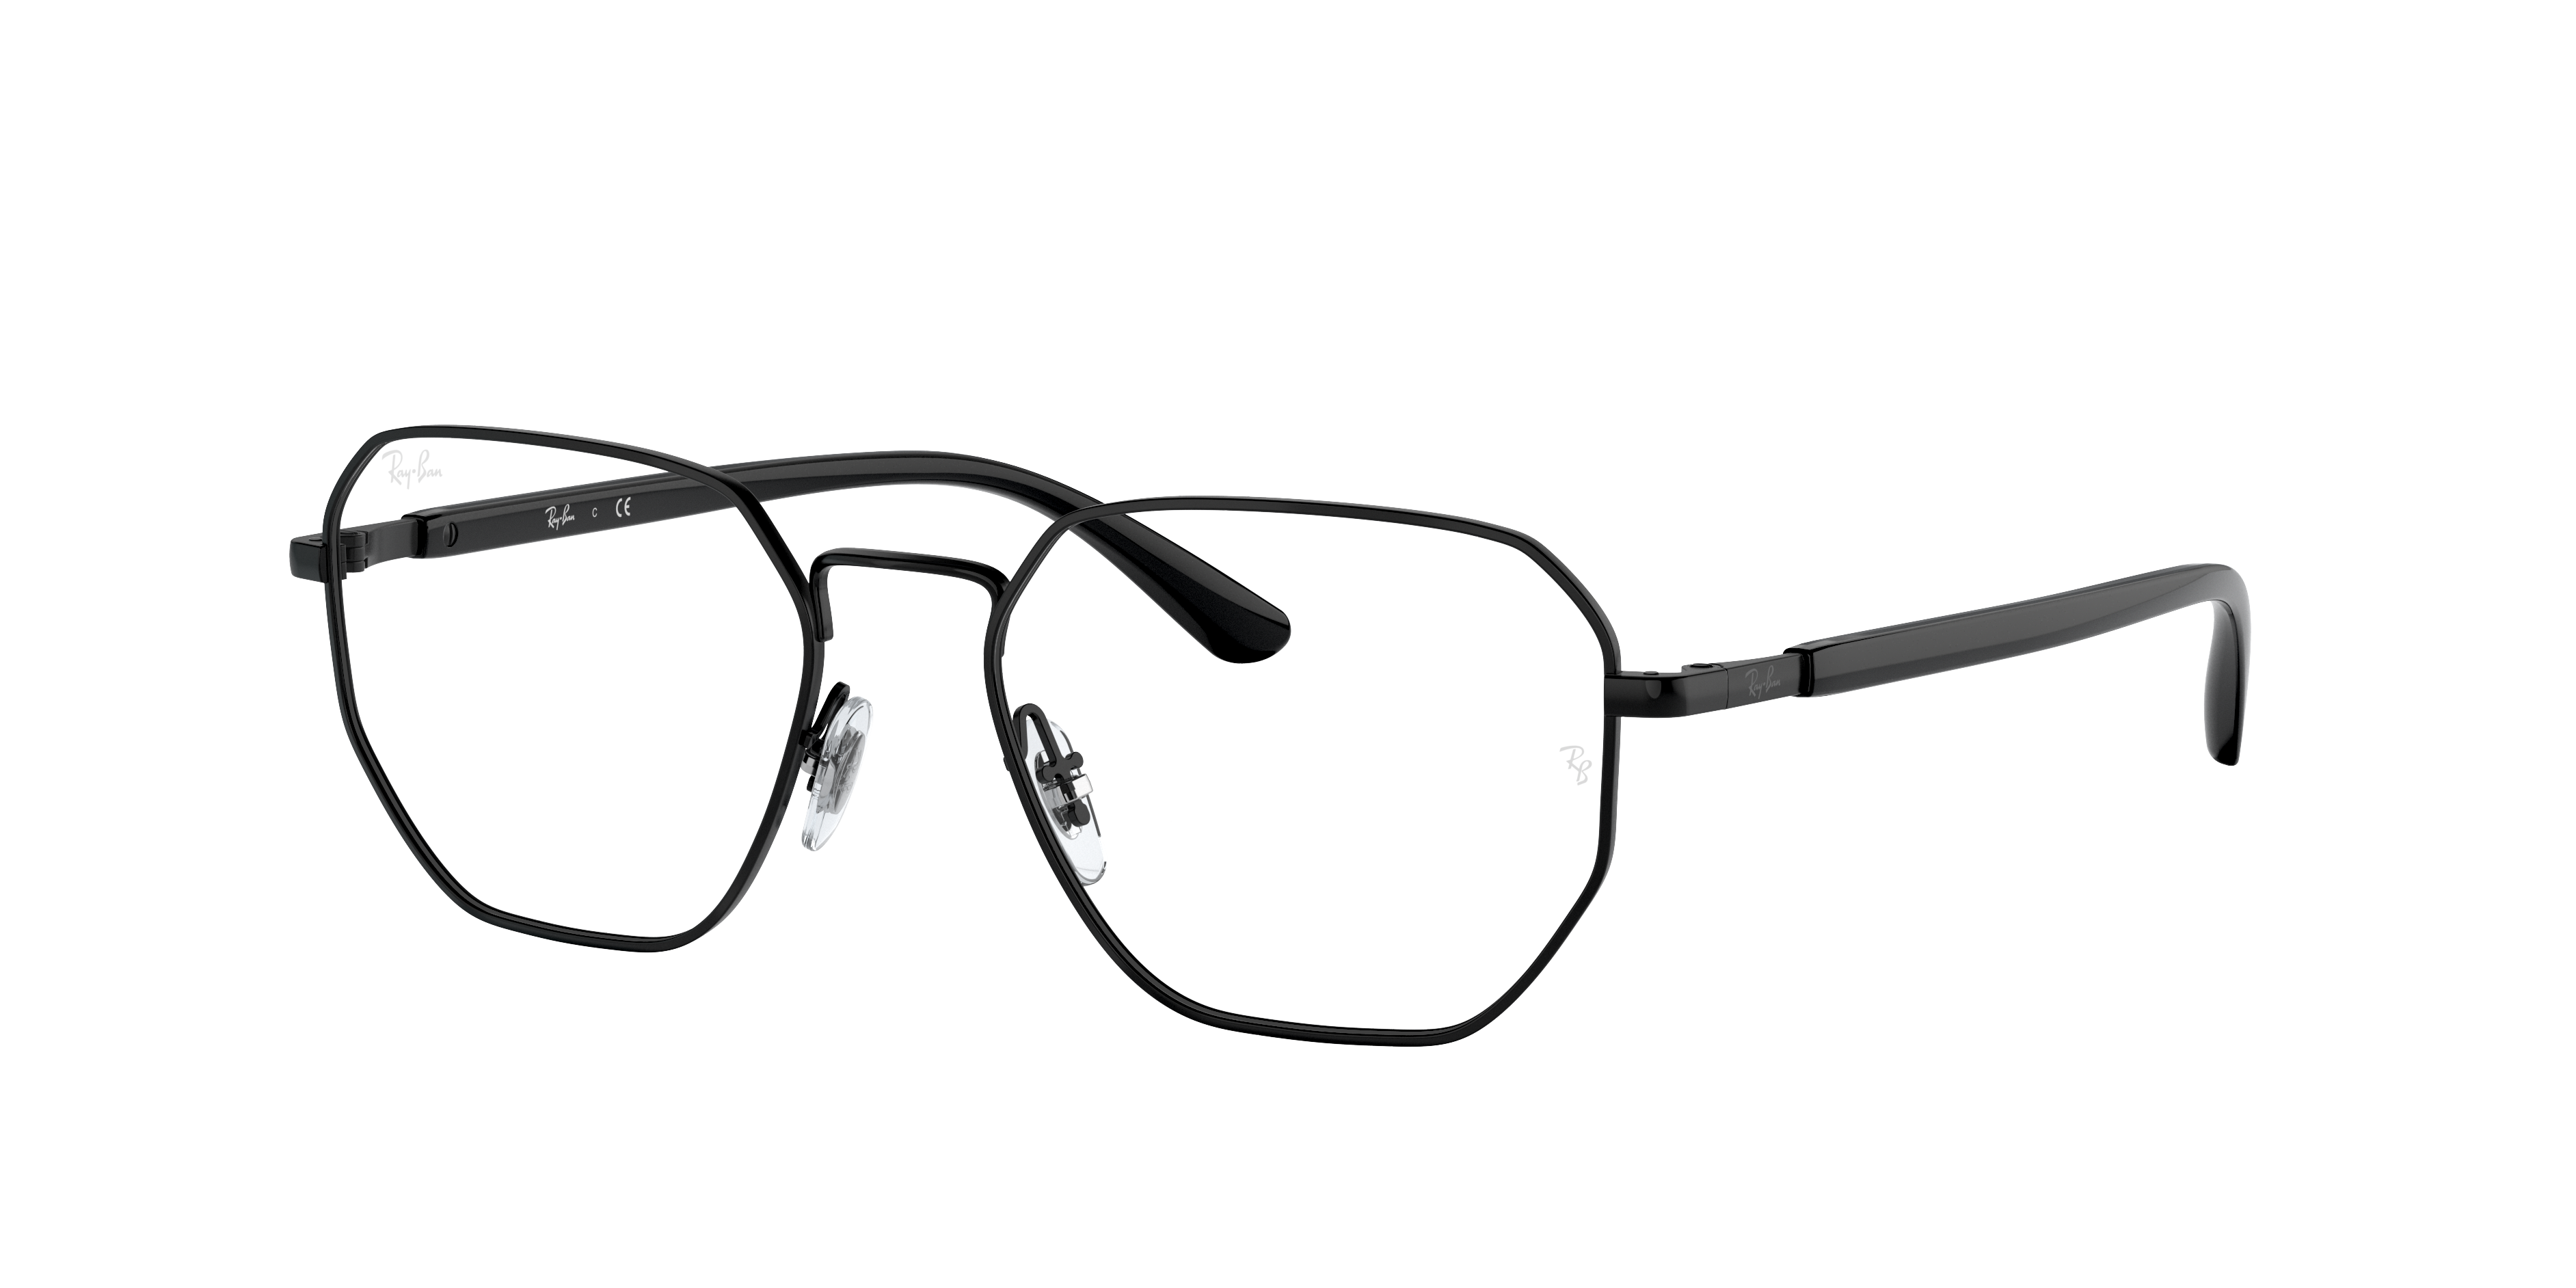 Ray Ban Rb6471 Eyeglasses Sand Black Frame Clear Lenses 52-17